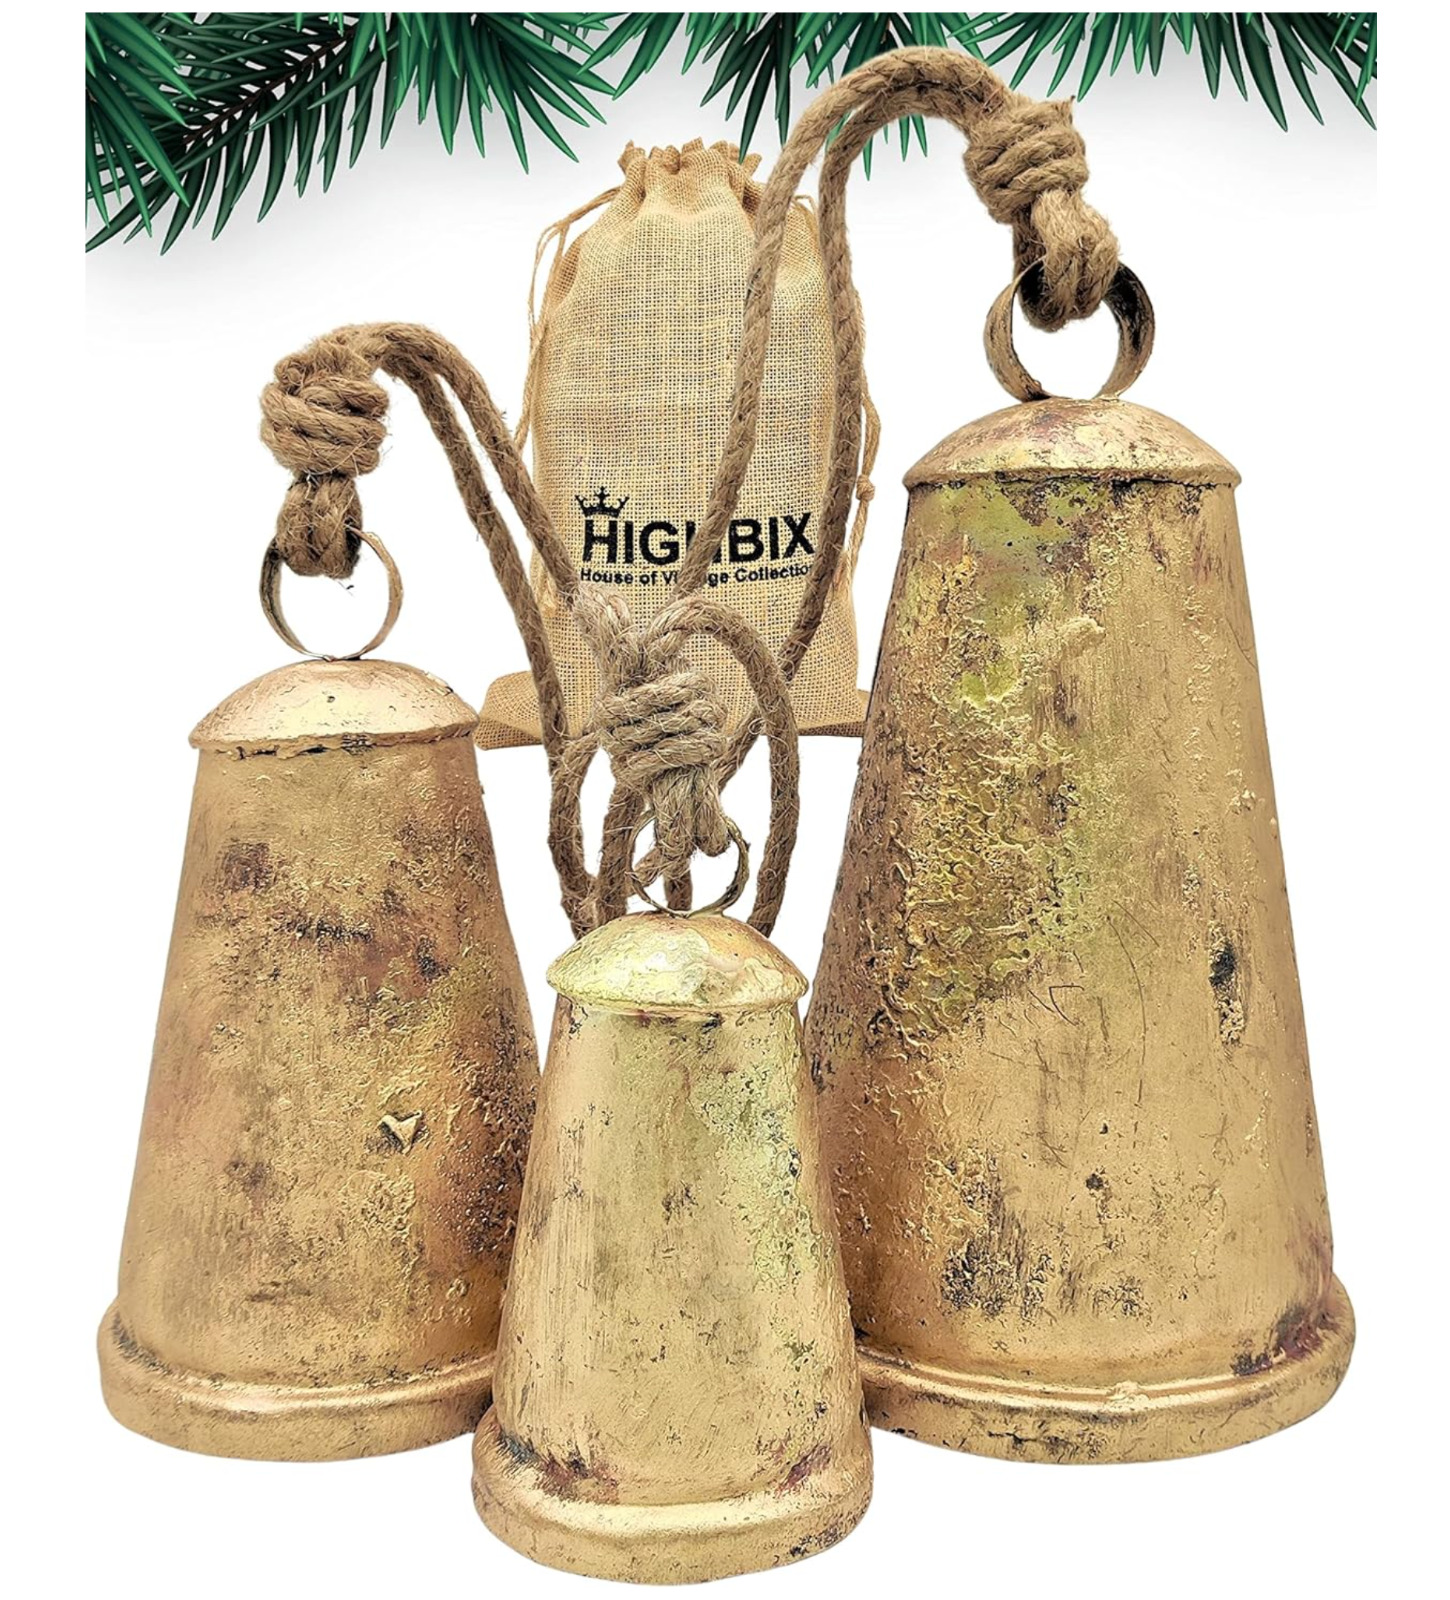 HIGHBIX Set of 3 XL Giant Harmony Cow Bells Huge Vintage Handmade Rustic